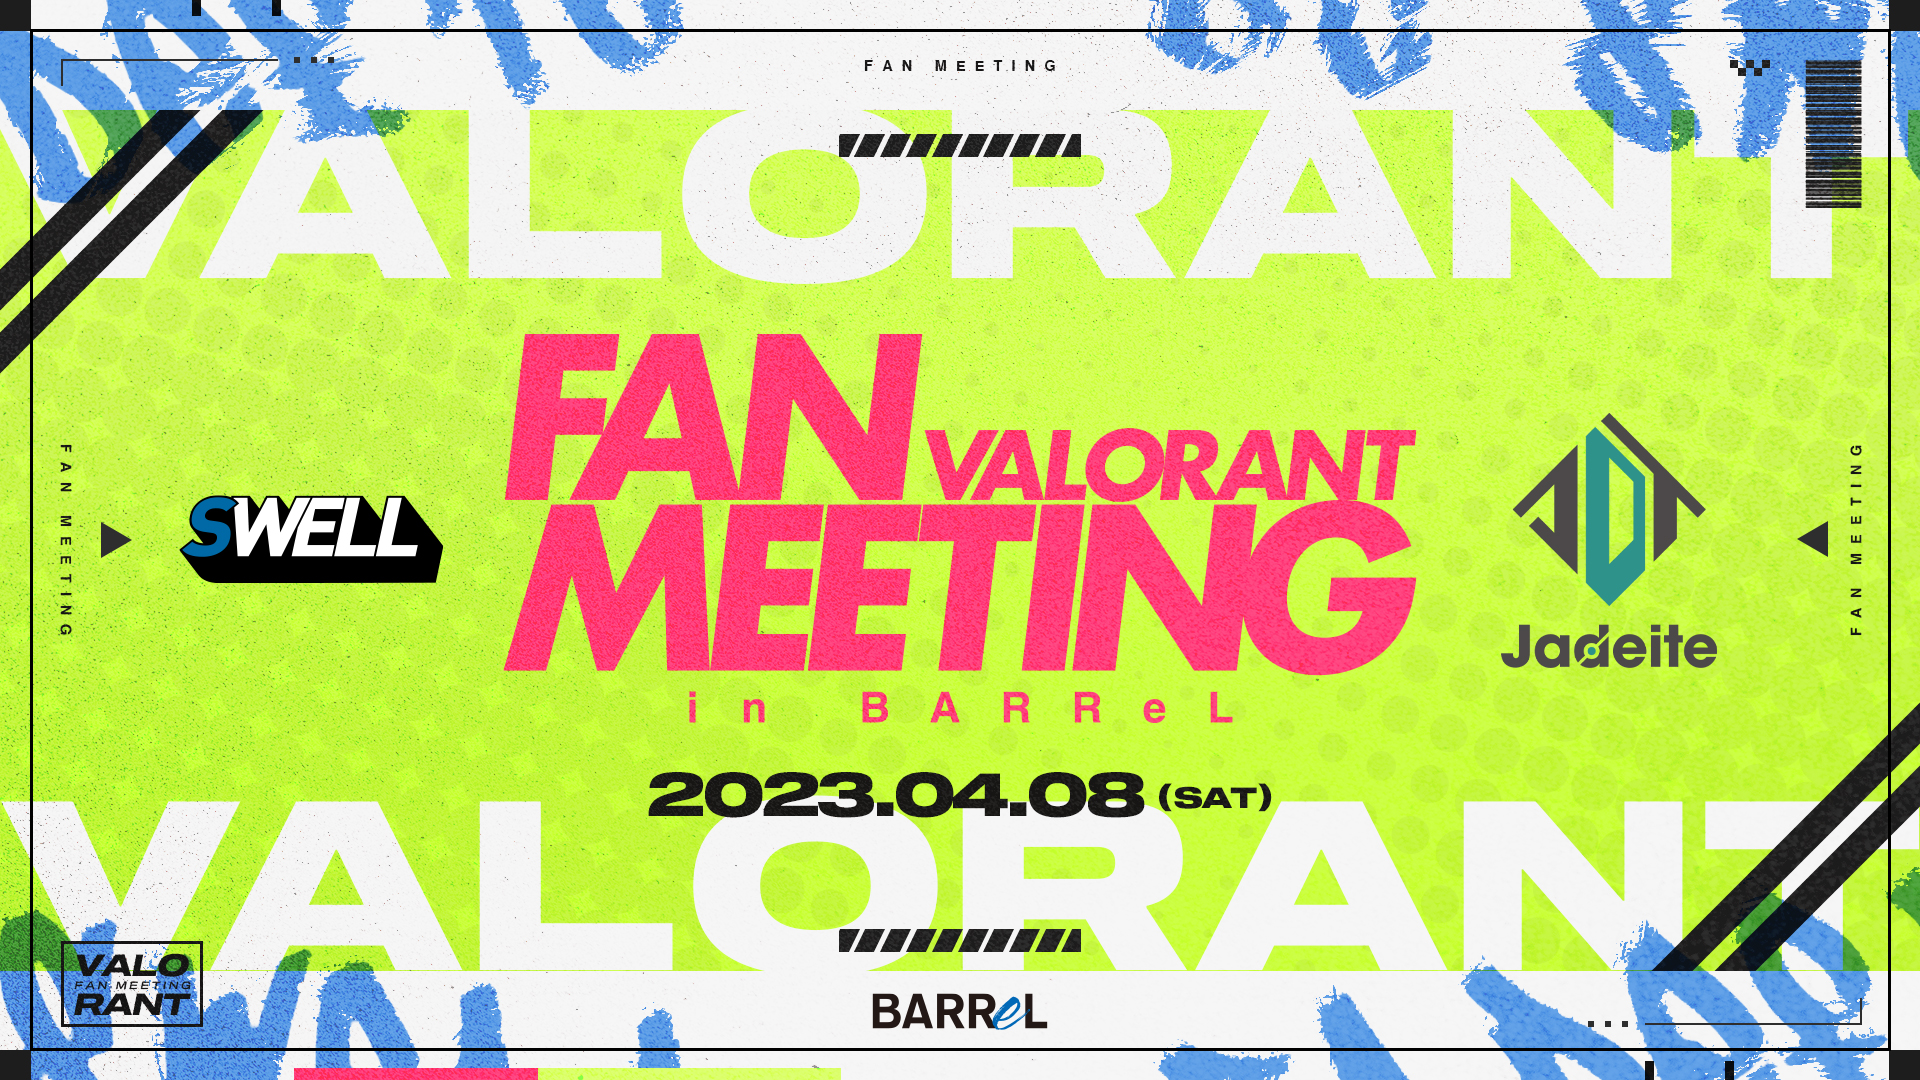 『VALORANT FAN MEETING in BARReL』オフラインイベント開催!